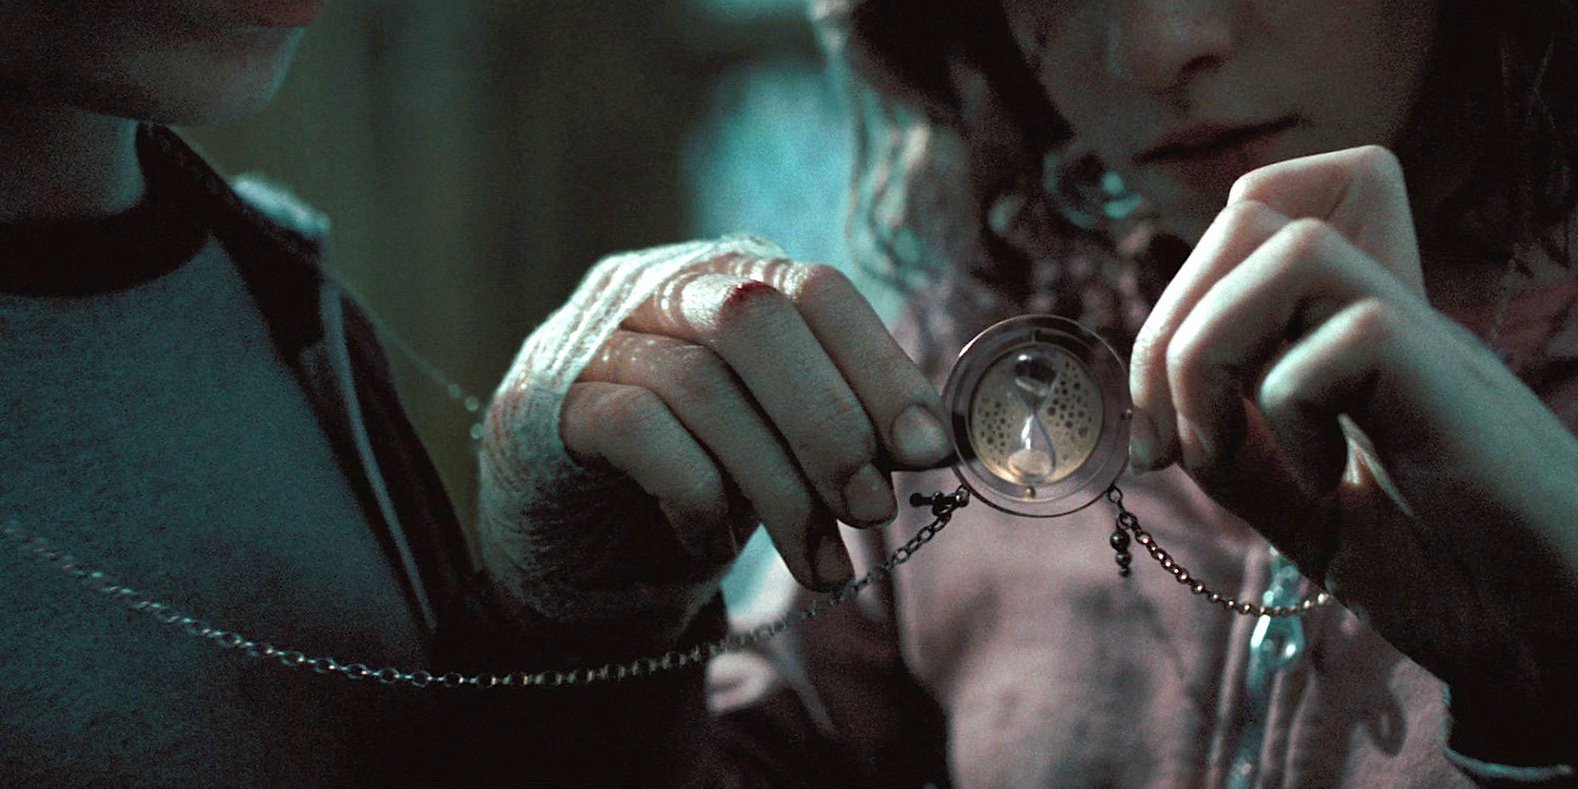 Hermione Granger's Time Turner in Prisoner of Azkaban